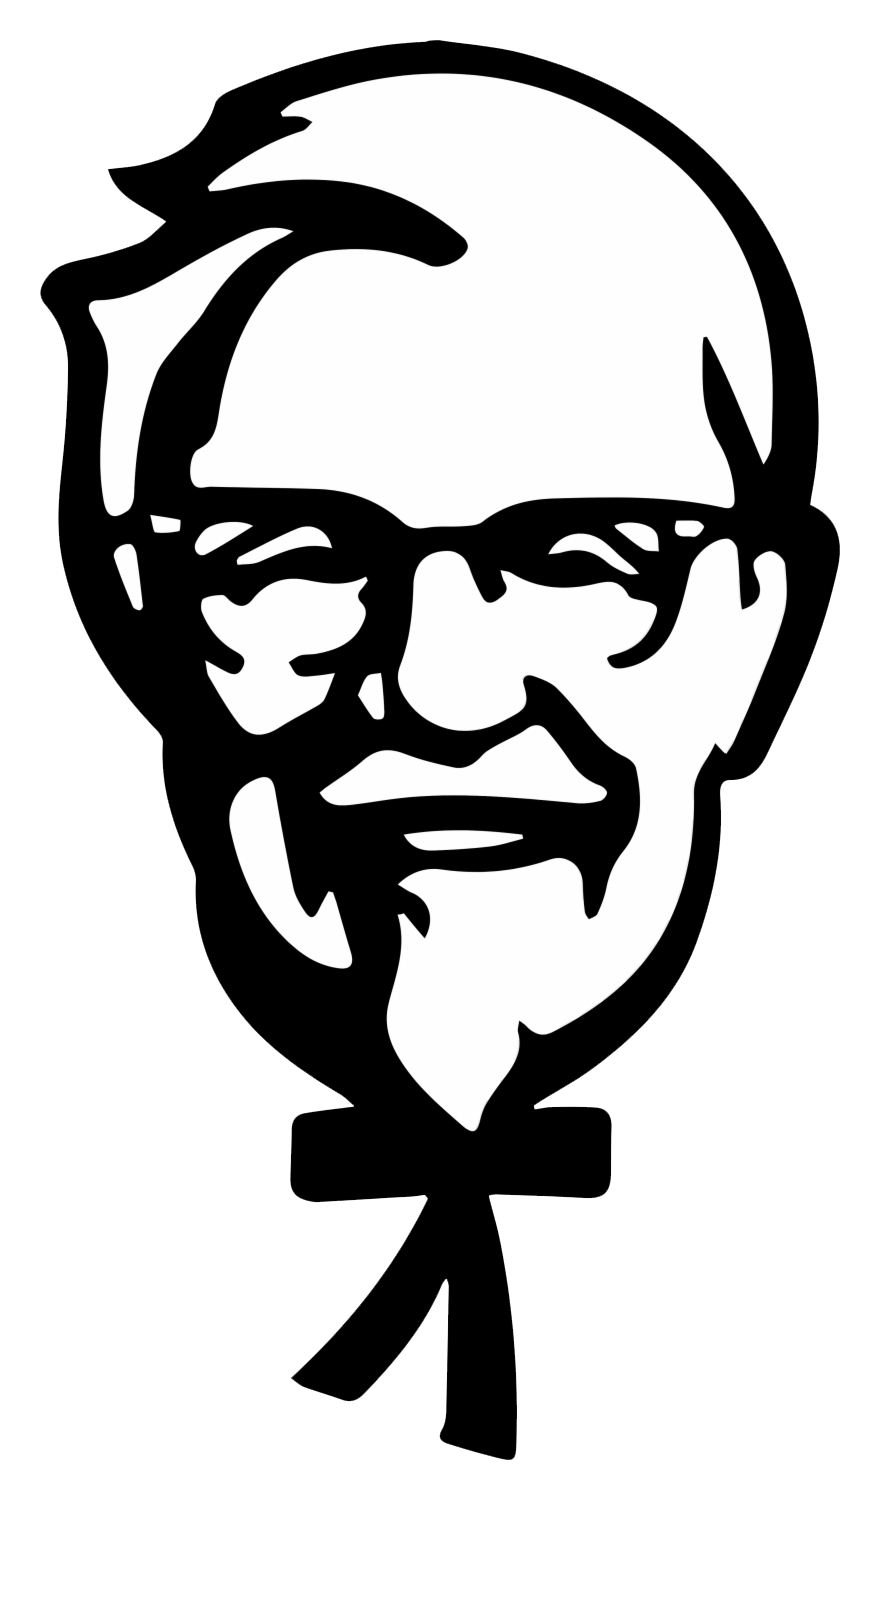 Imagem transparente do logotipo do KFC